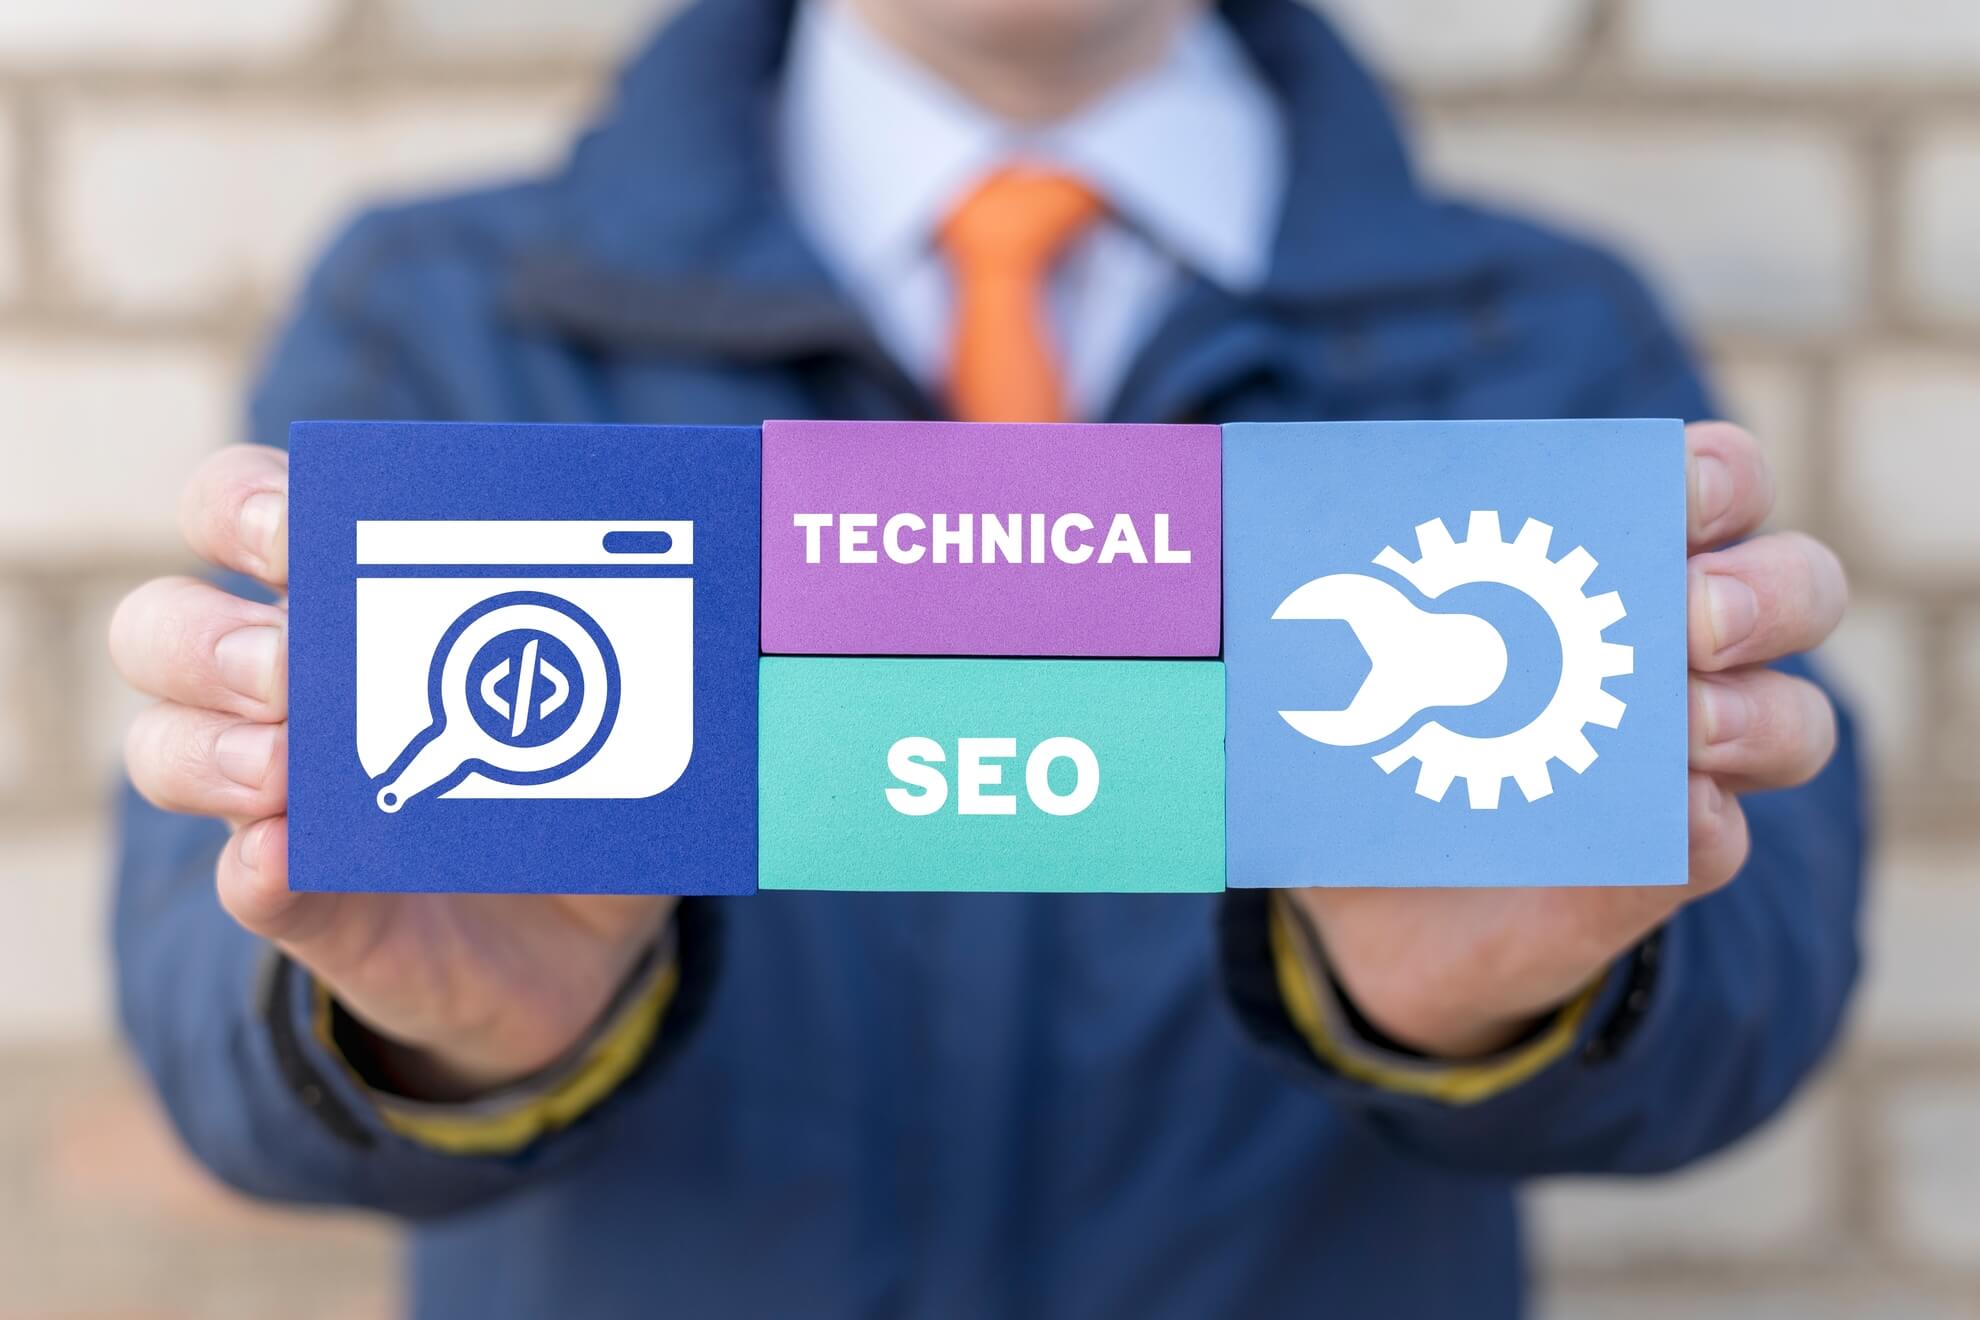 Technisches SEO umfasst alle Maßnahmen, die darauf abzielen, die technische Struktur einer Webseite zu optimieren, um ein besseres Ranking in den Suchmaschinenergebnissen zu erreichen.